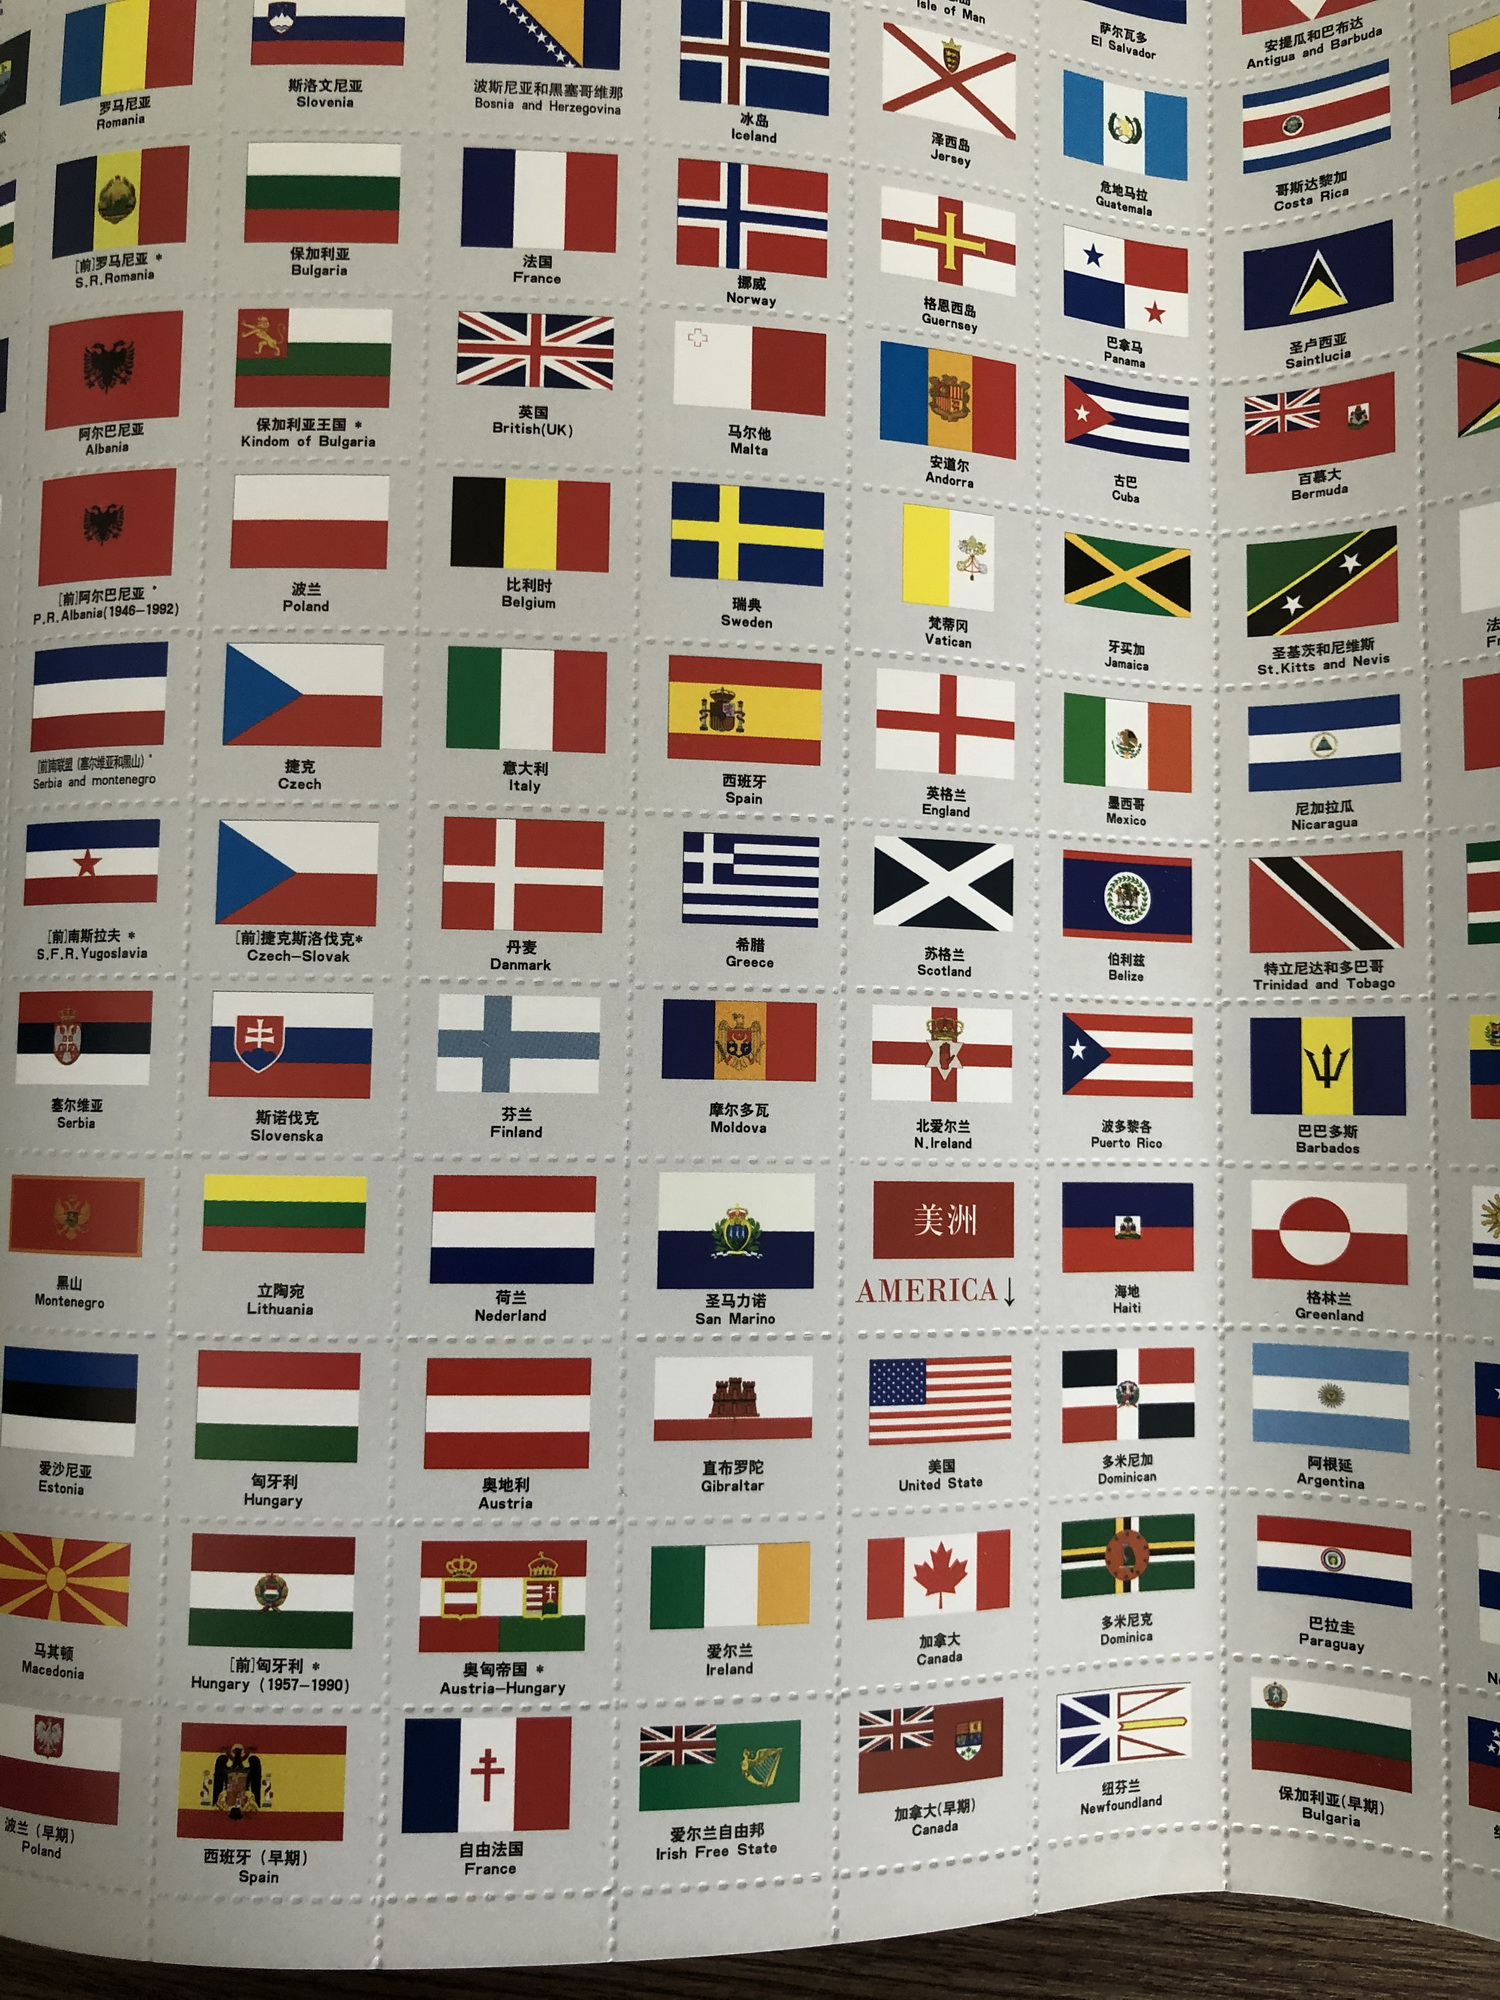 Quốc kỳ các nước trên thế giới và tiểu bang Mỹ: Những quốc gia trên thế giới và tiểu bang Mỹ đều có một quốc kỳ đặc trưng riêng, mang theo những giá trị văn hóa, lịch sử, và truyền thống đặc biệt. Với hình ảnh này, bạn sẽ được khám phá và tìm hiểu thêm về những nét độc đáo của từng quốc gia và tiểu bang Mỹ và cảm nhận sự đa dạng văn hóa trên thế giới.